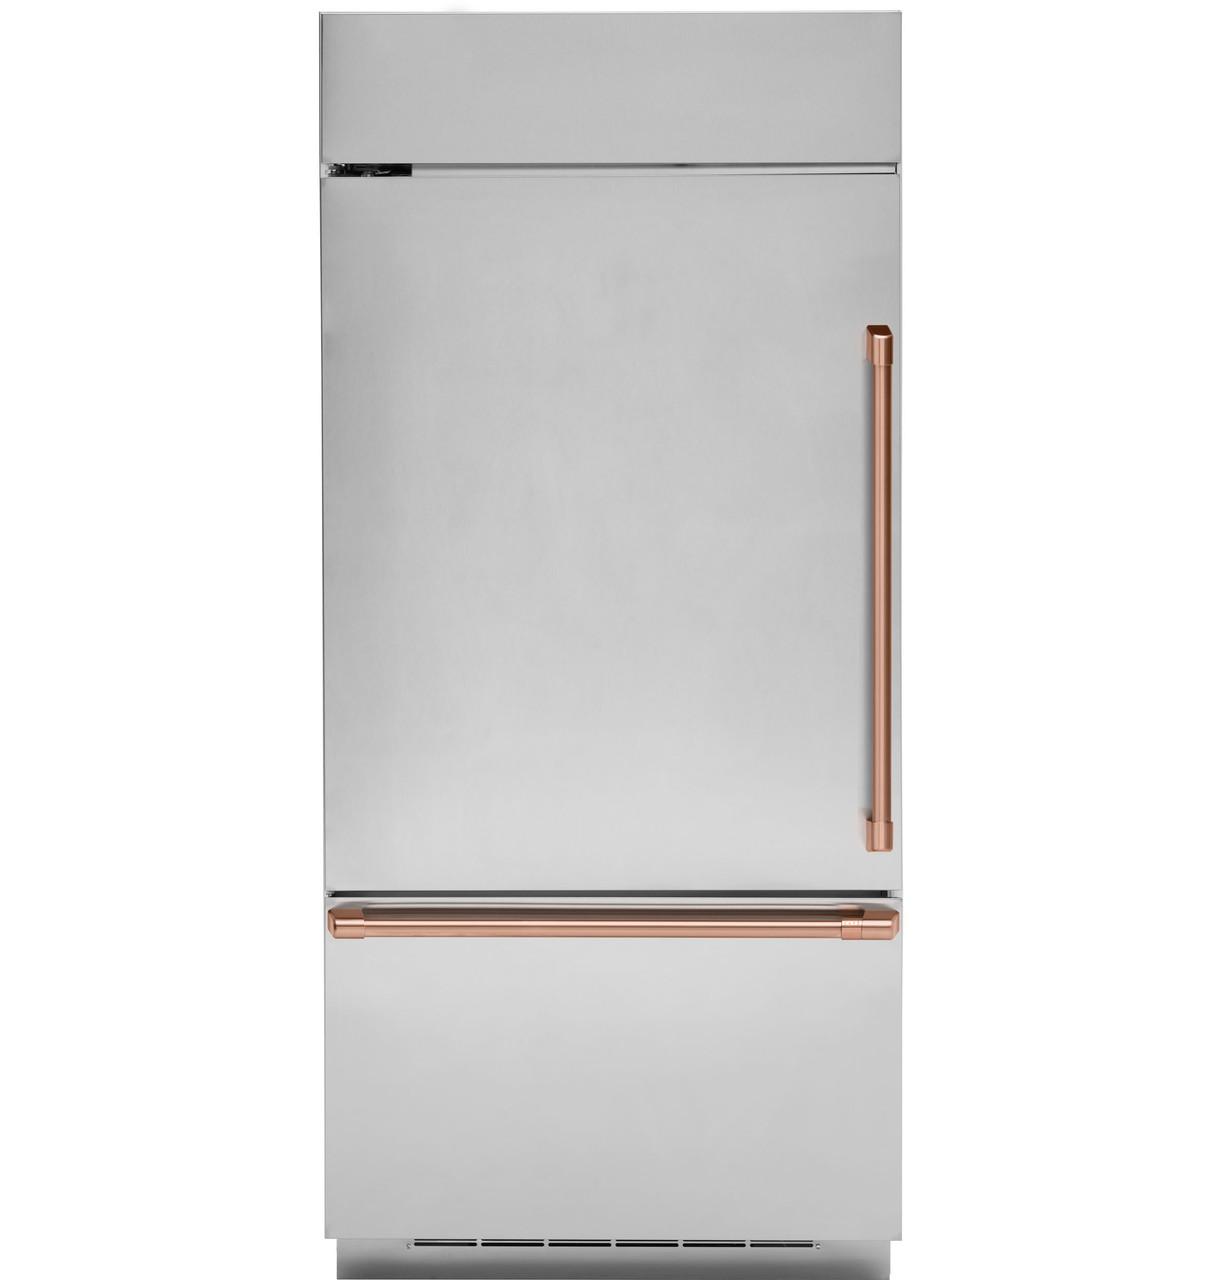 Cafe Caf(eback)™ Refrigeration Handle Kit - Brushed Copper